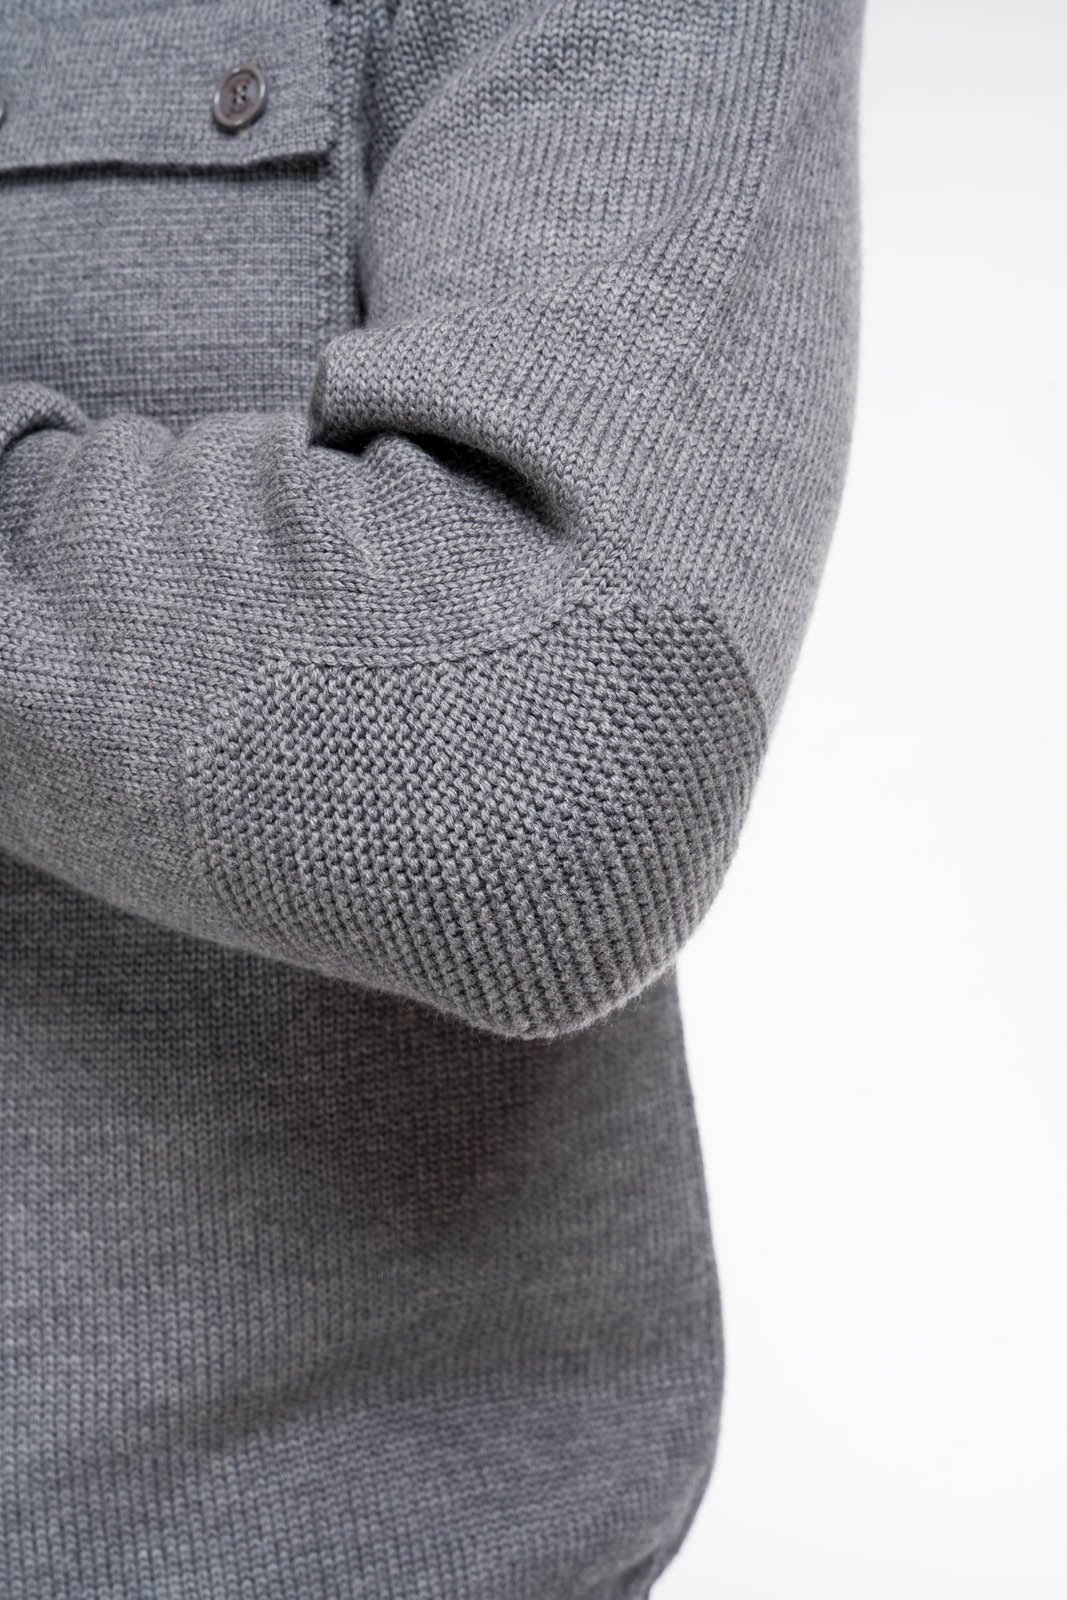 dettaglio gomito maglione stone